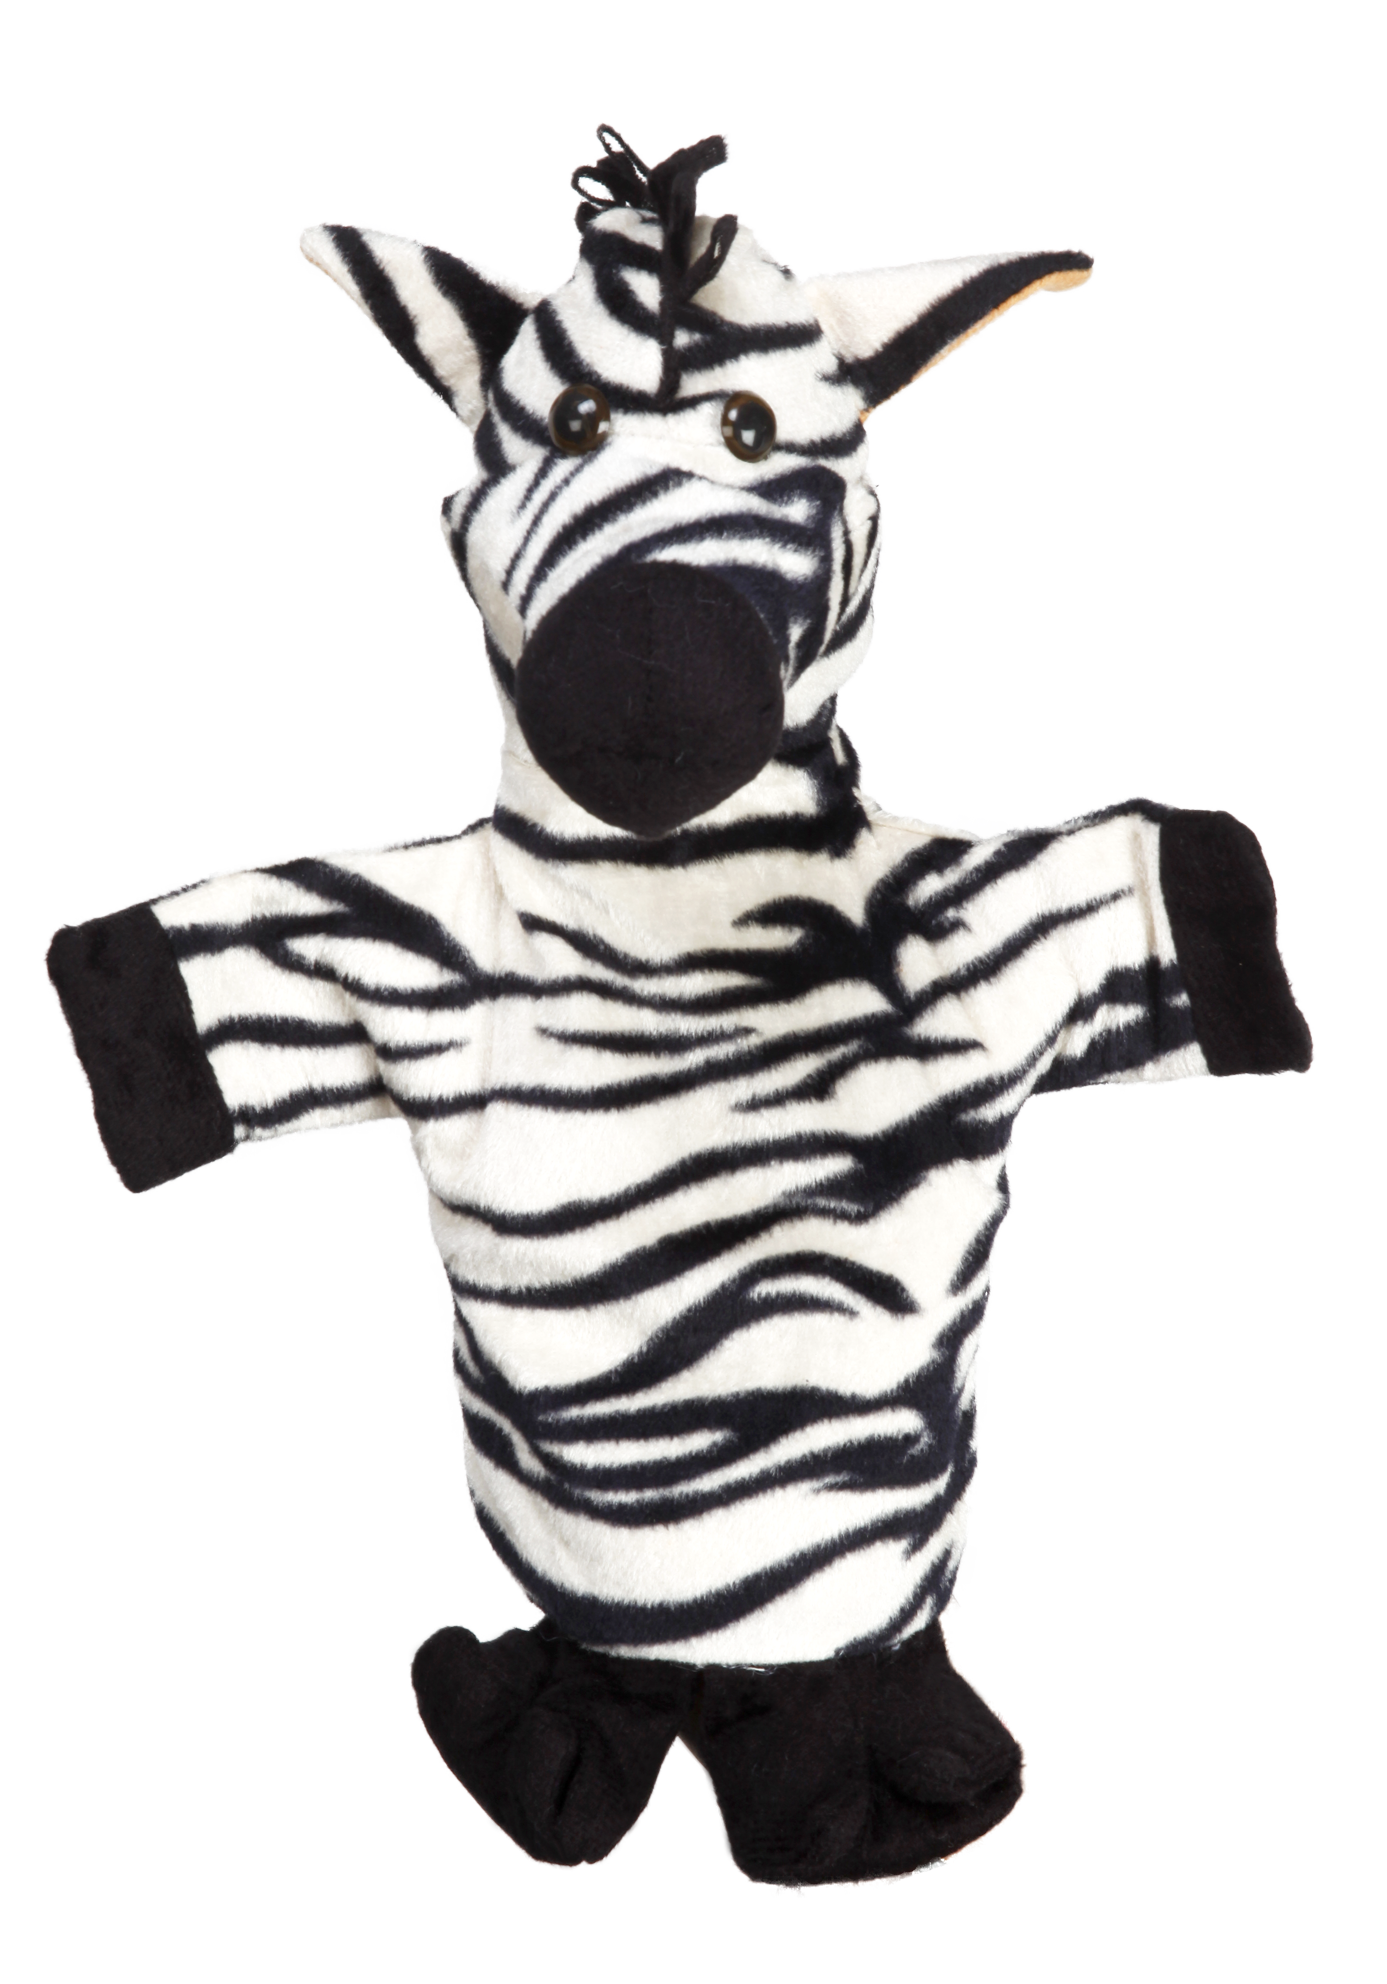 Vr/Glove Puppet Zebra